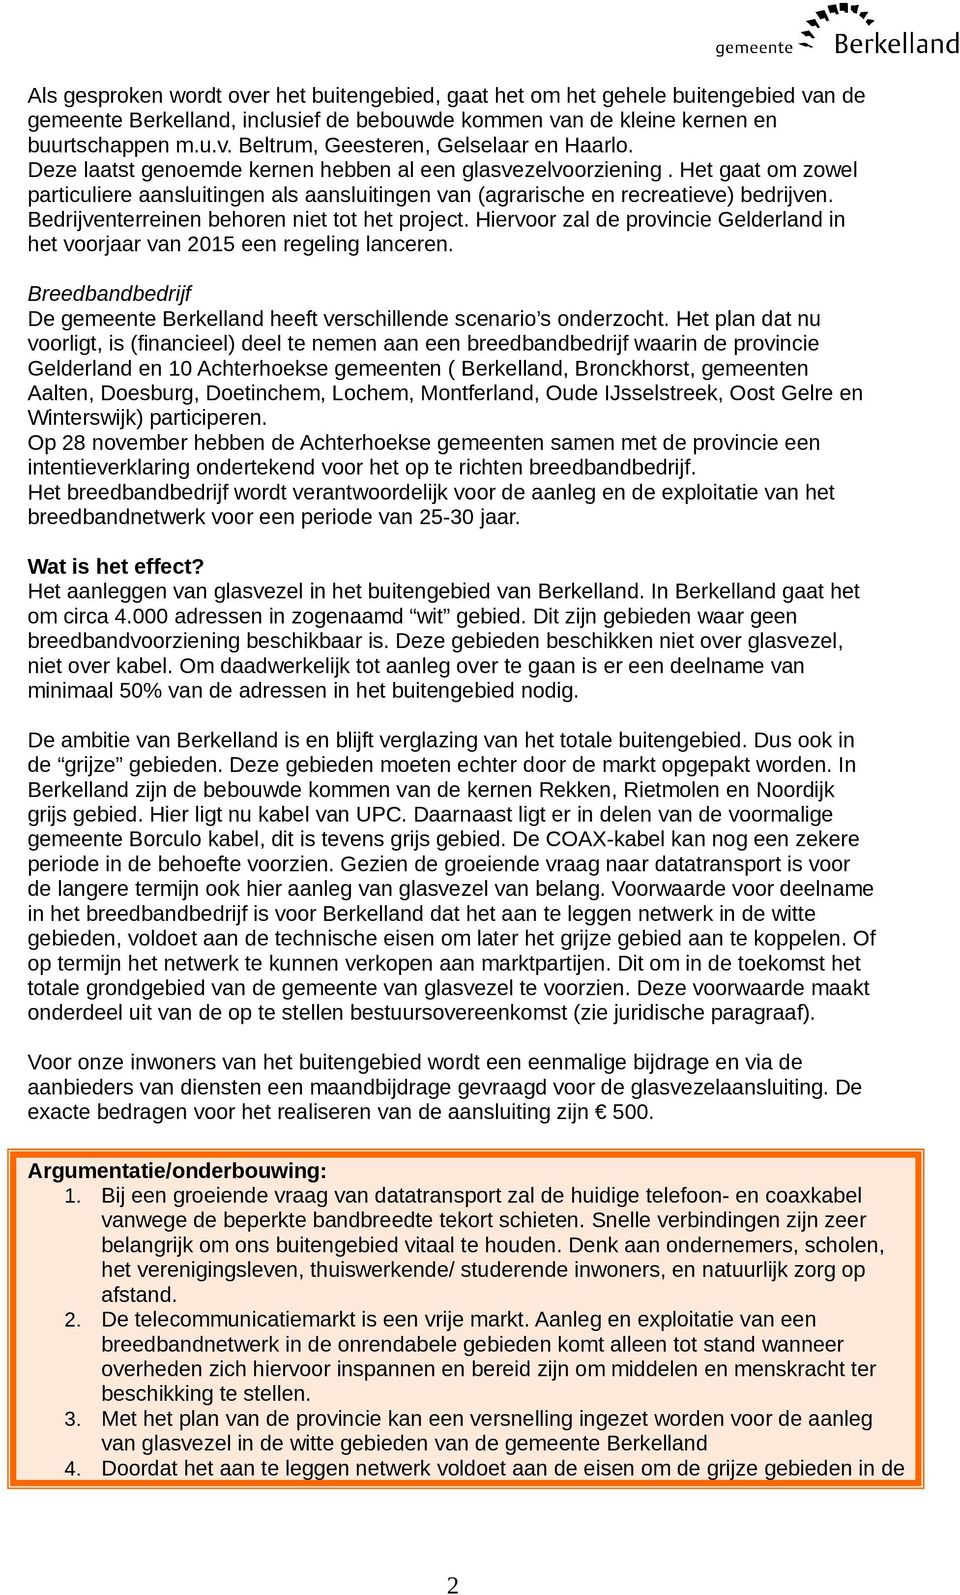 Bedrijventerreinen behoren niet tot het project. Hiervoor zal de provincie Gelderland in het voorjaar van 2015 een regeling lanceren.